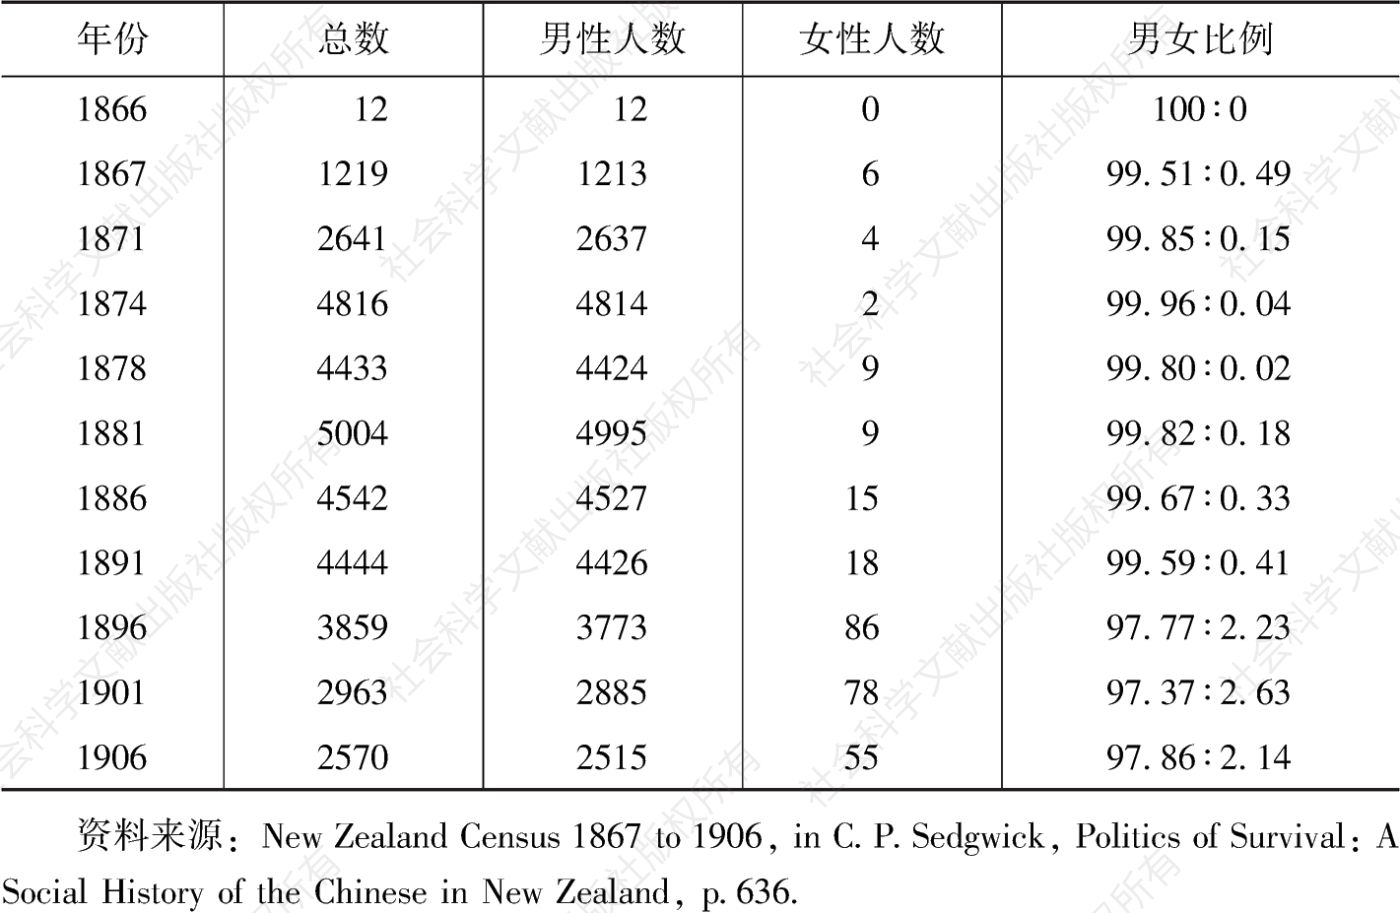 表3-3 早期新西兰华侨男女比例（1866—1906）